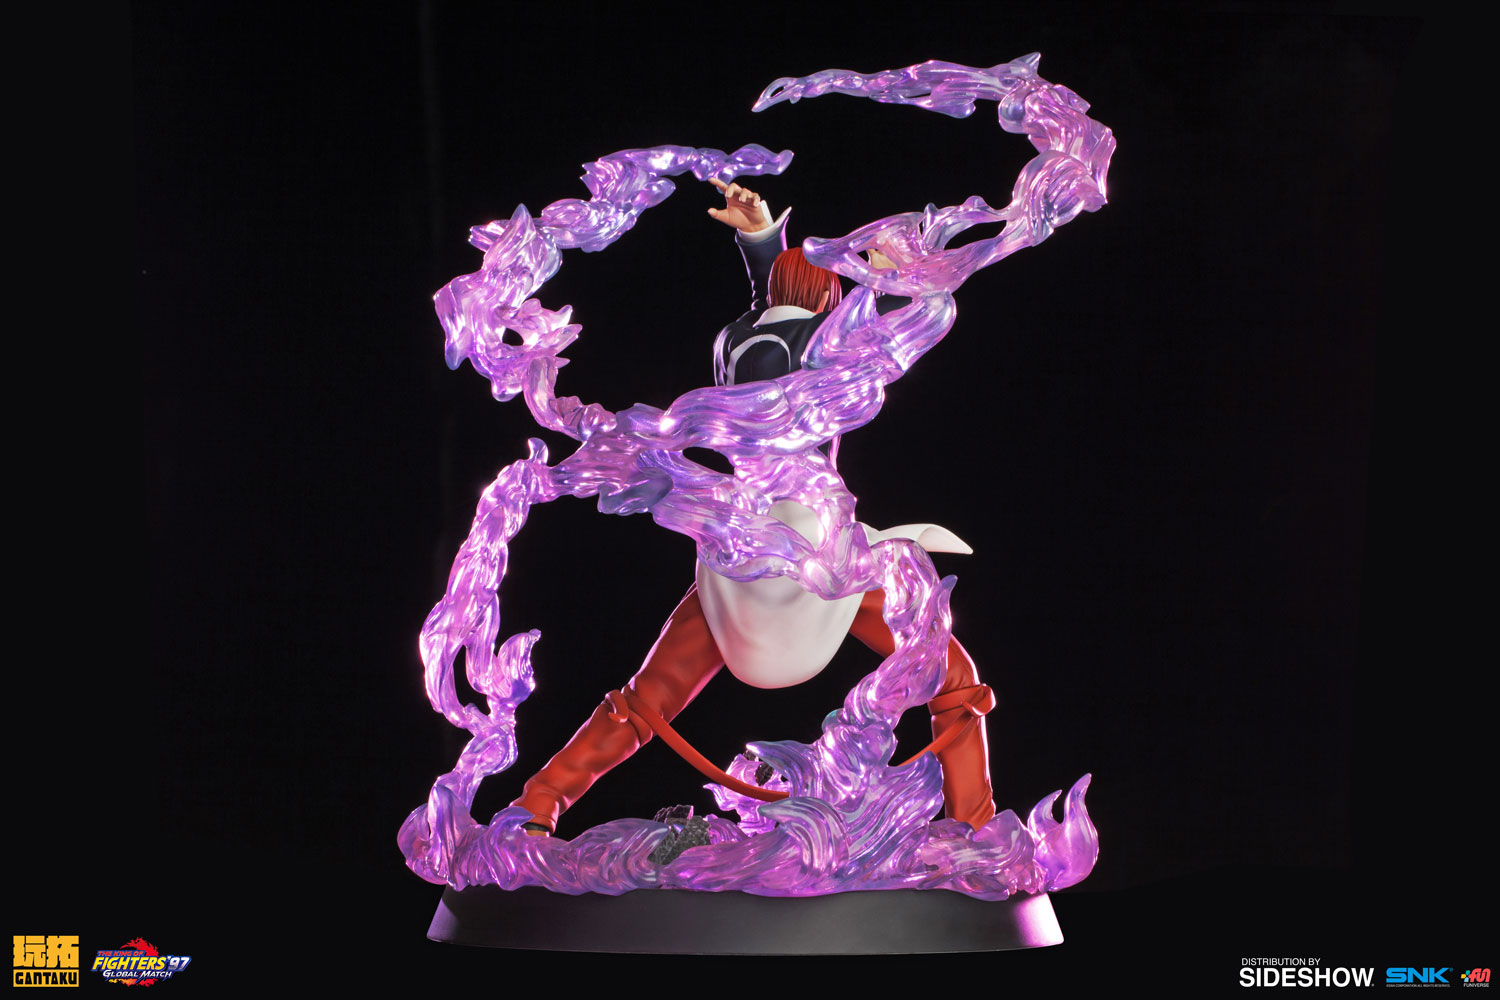 PRÉ VENDA: Estátua Iori Yagami: The King of Fighters '97 (Escala 1/8) -  Gantaku - Toyshow Tudo de Marvel DC Netflix Geek Funko Pop Colecionáveis